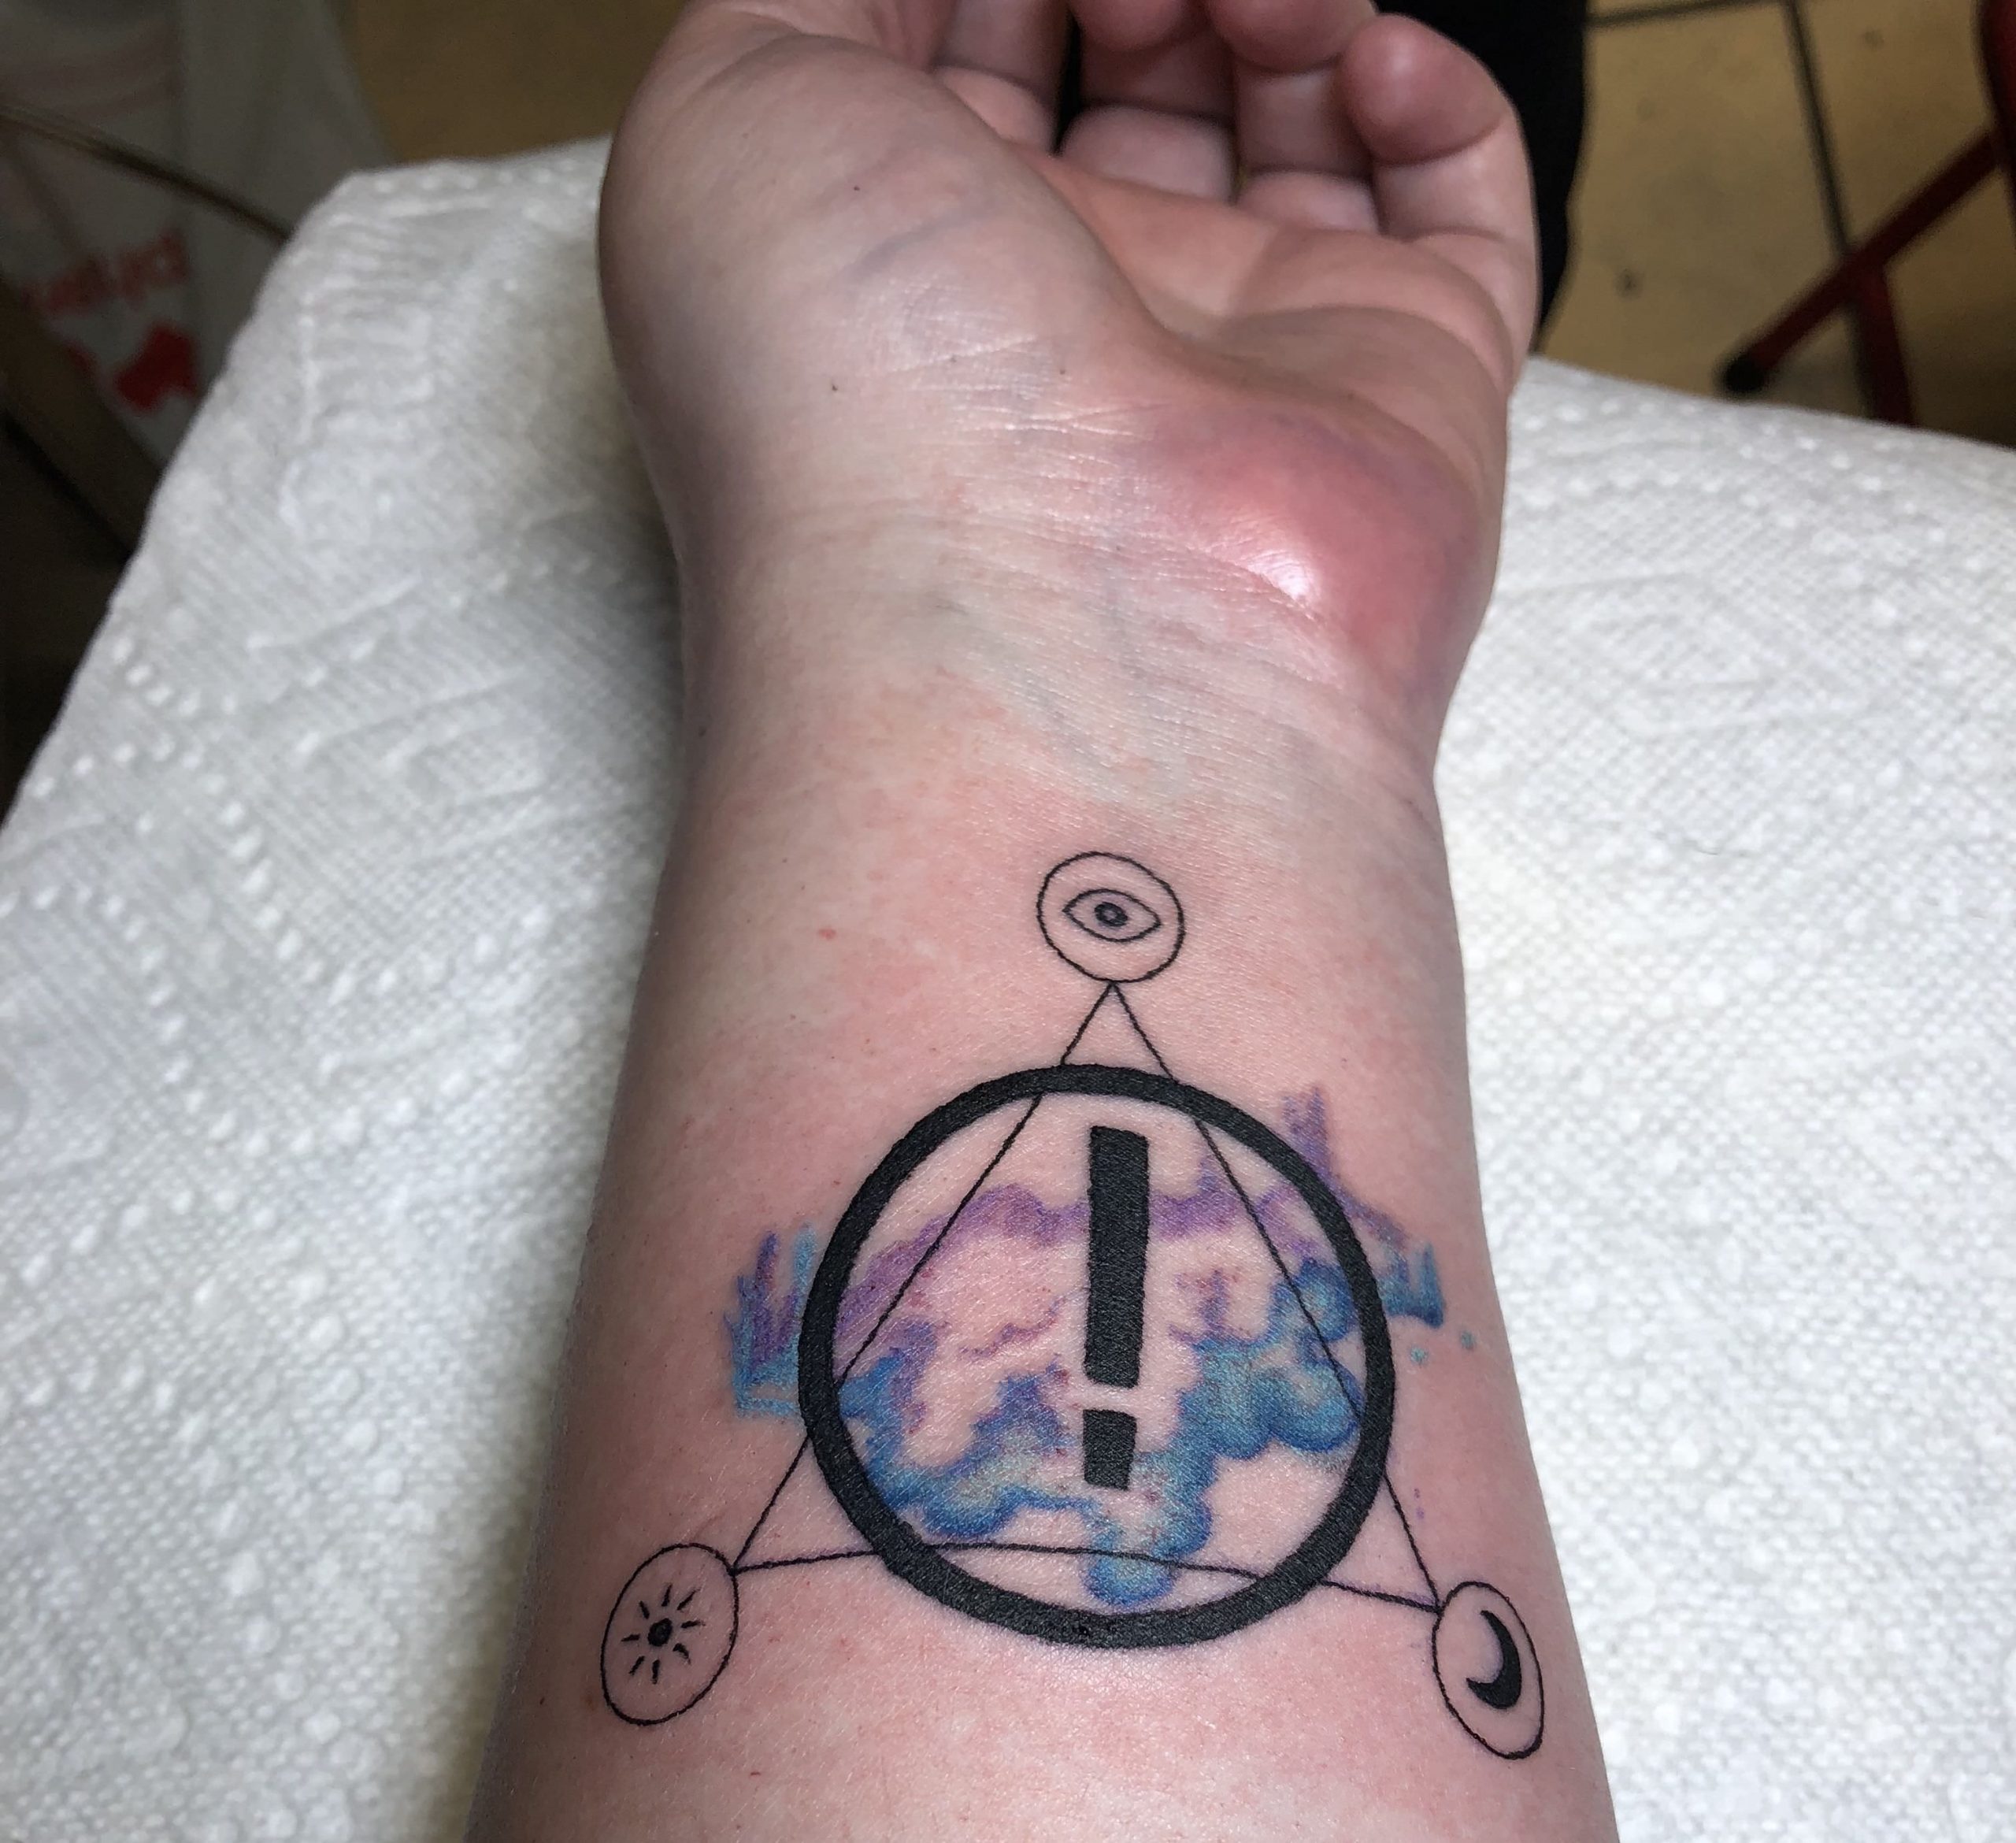 Simbolo EMO tatuado no braço